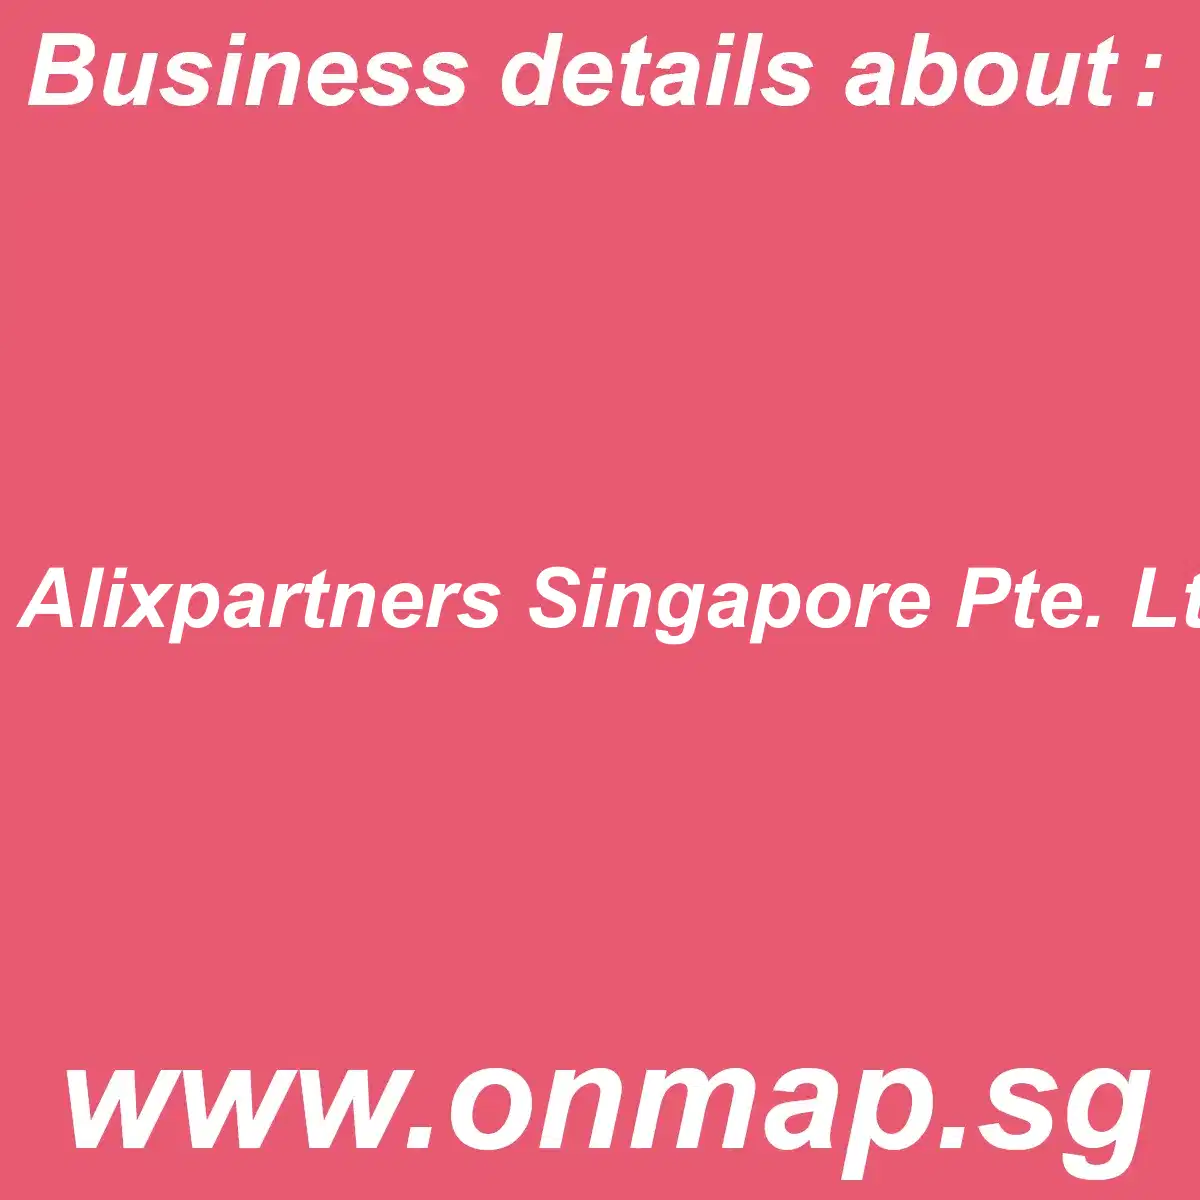 Alixpartners Singapore Pte. Ltd. Details, Locations, Reviews